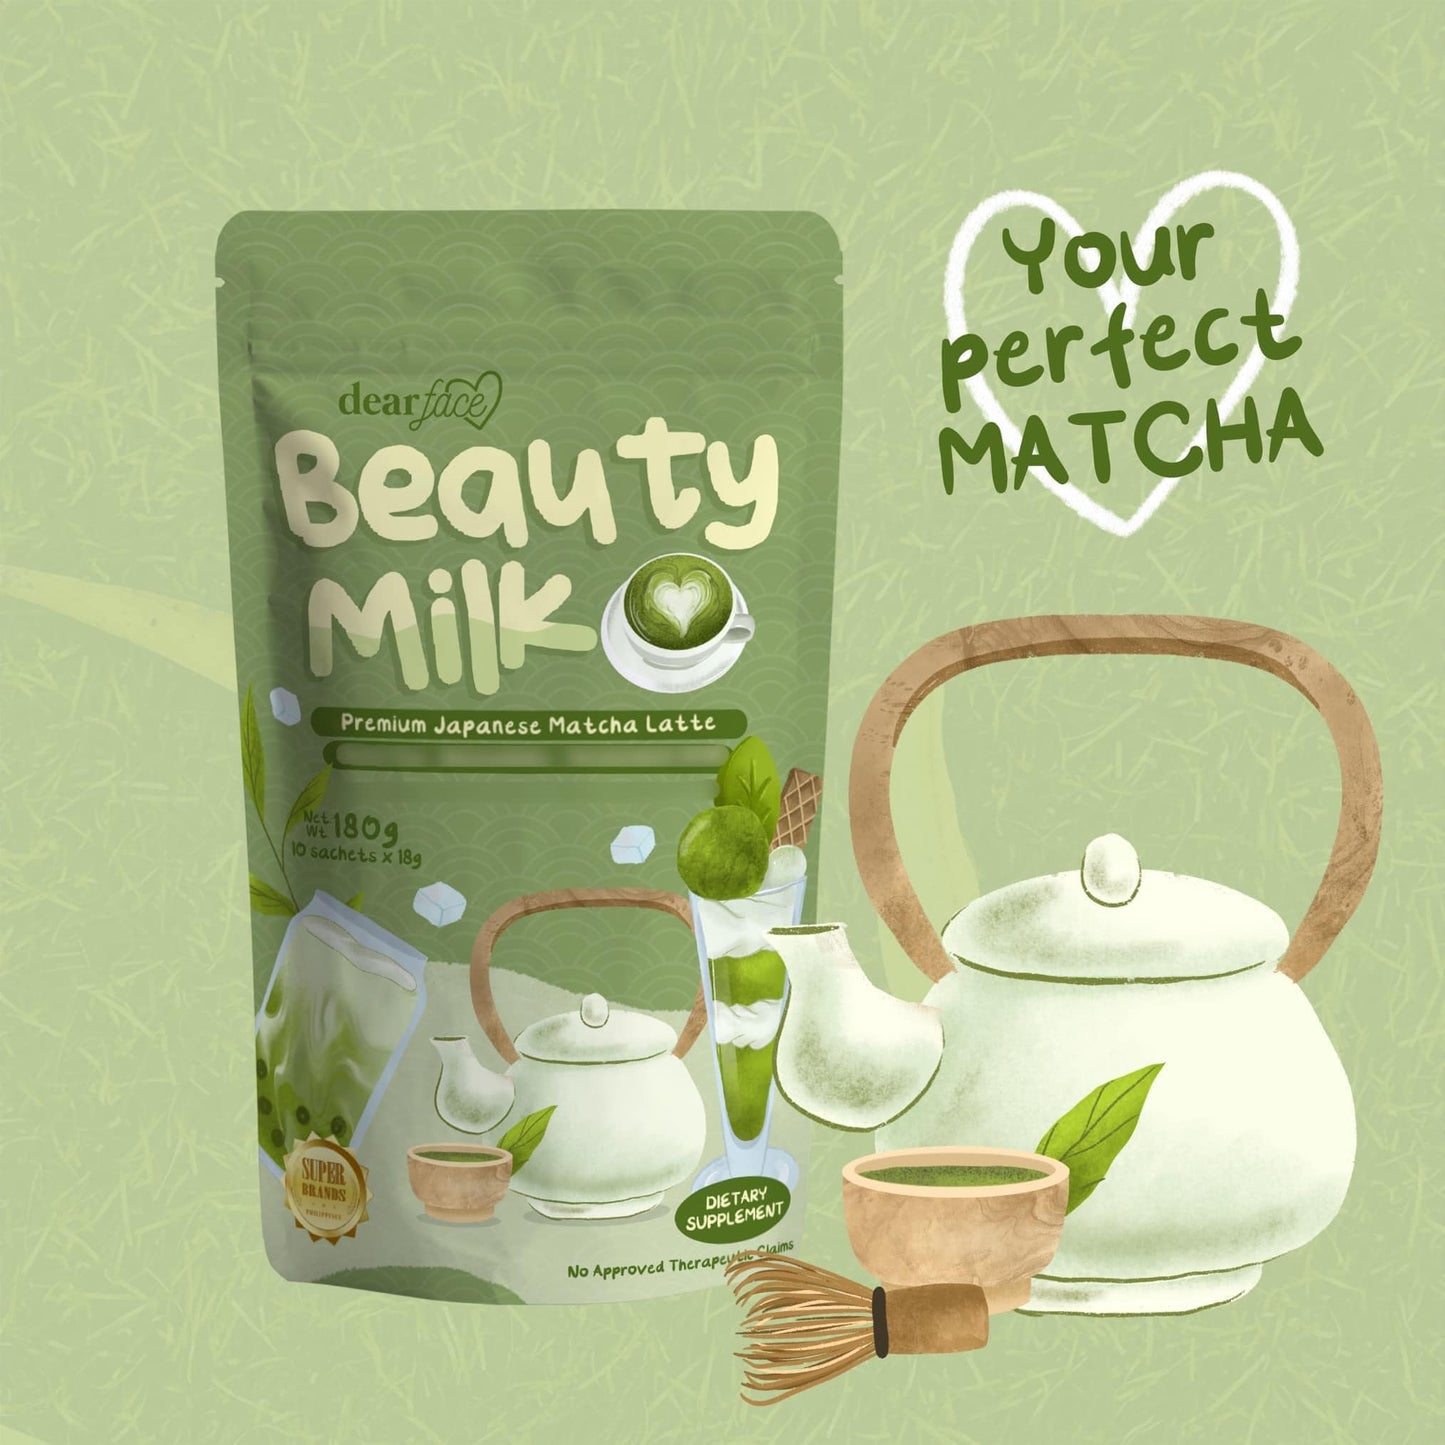 Dear Face Beauty Bean Premium Japanese Matcha Latte (Net Weight 180g)